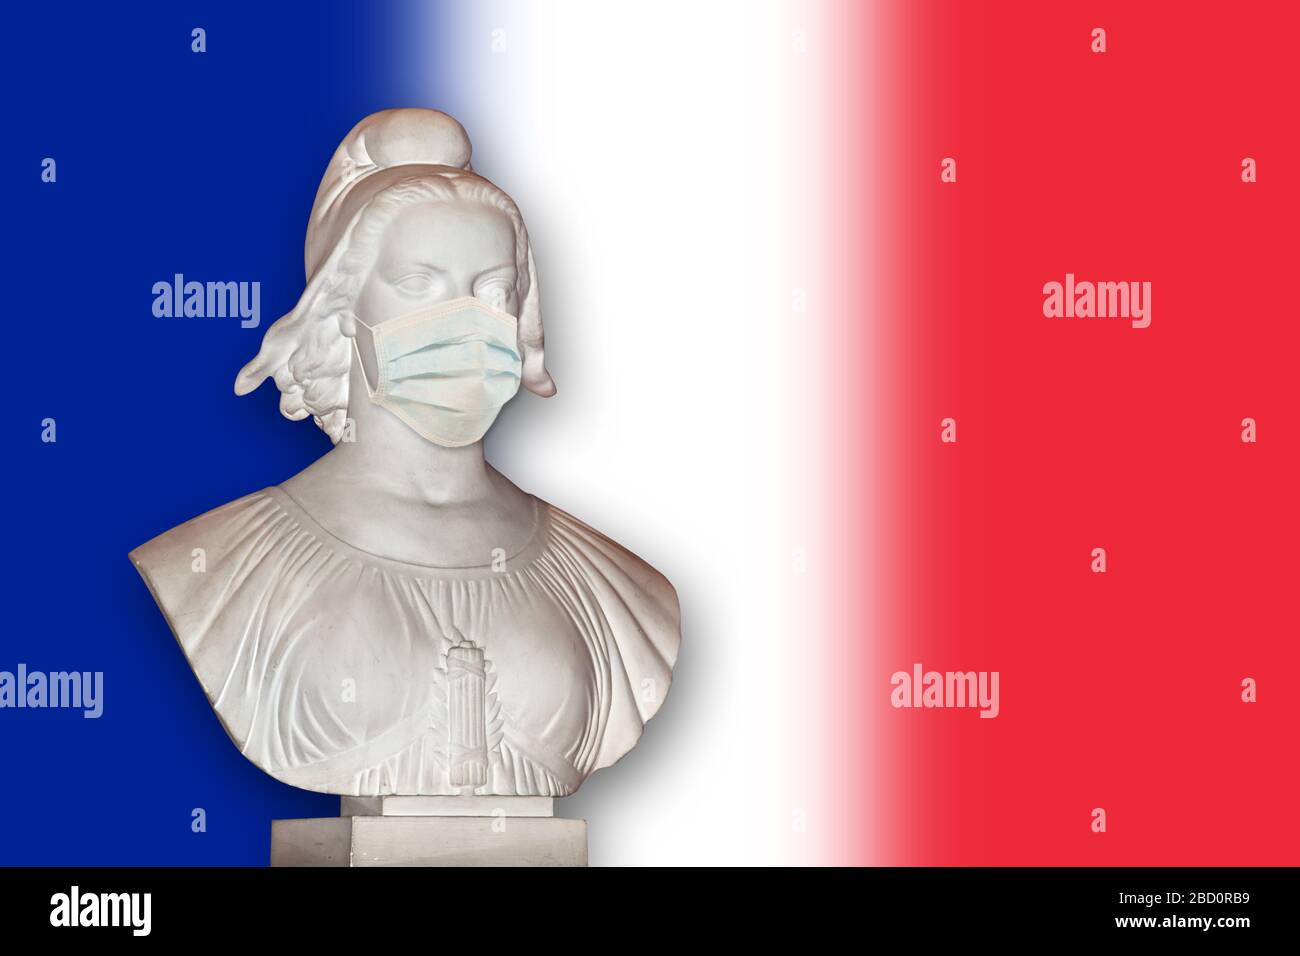 Estatua de Marianne con una máscara quirúrgica, Francia símbolo de la república que trata de coronavirus covid-19 epidemia Foto de stock